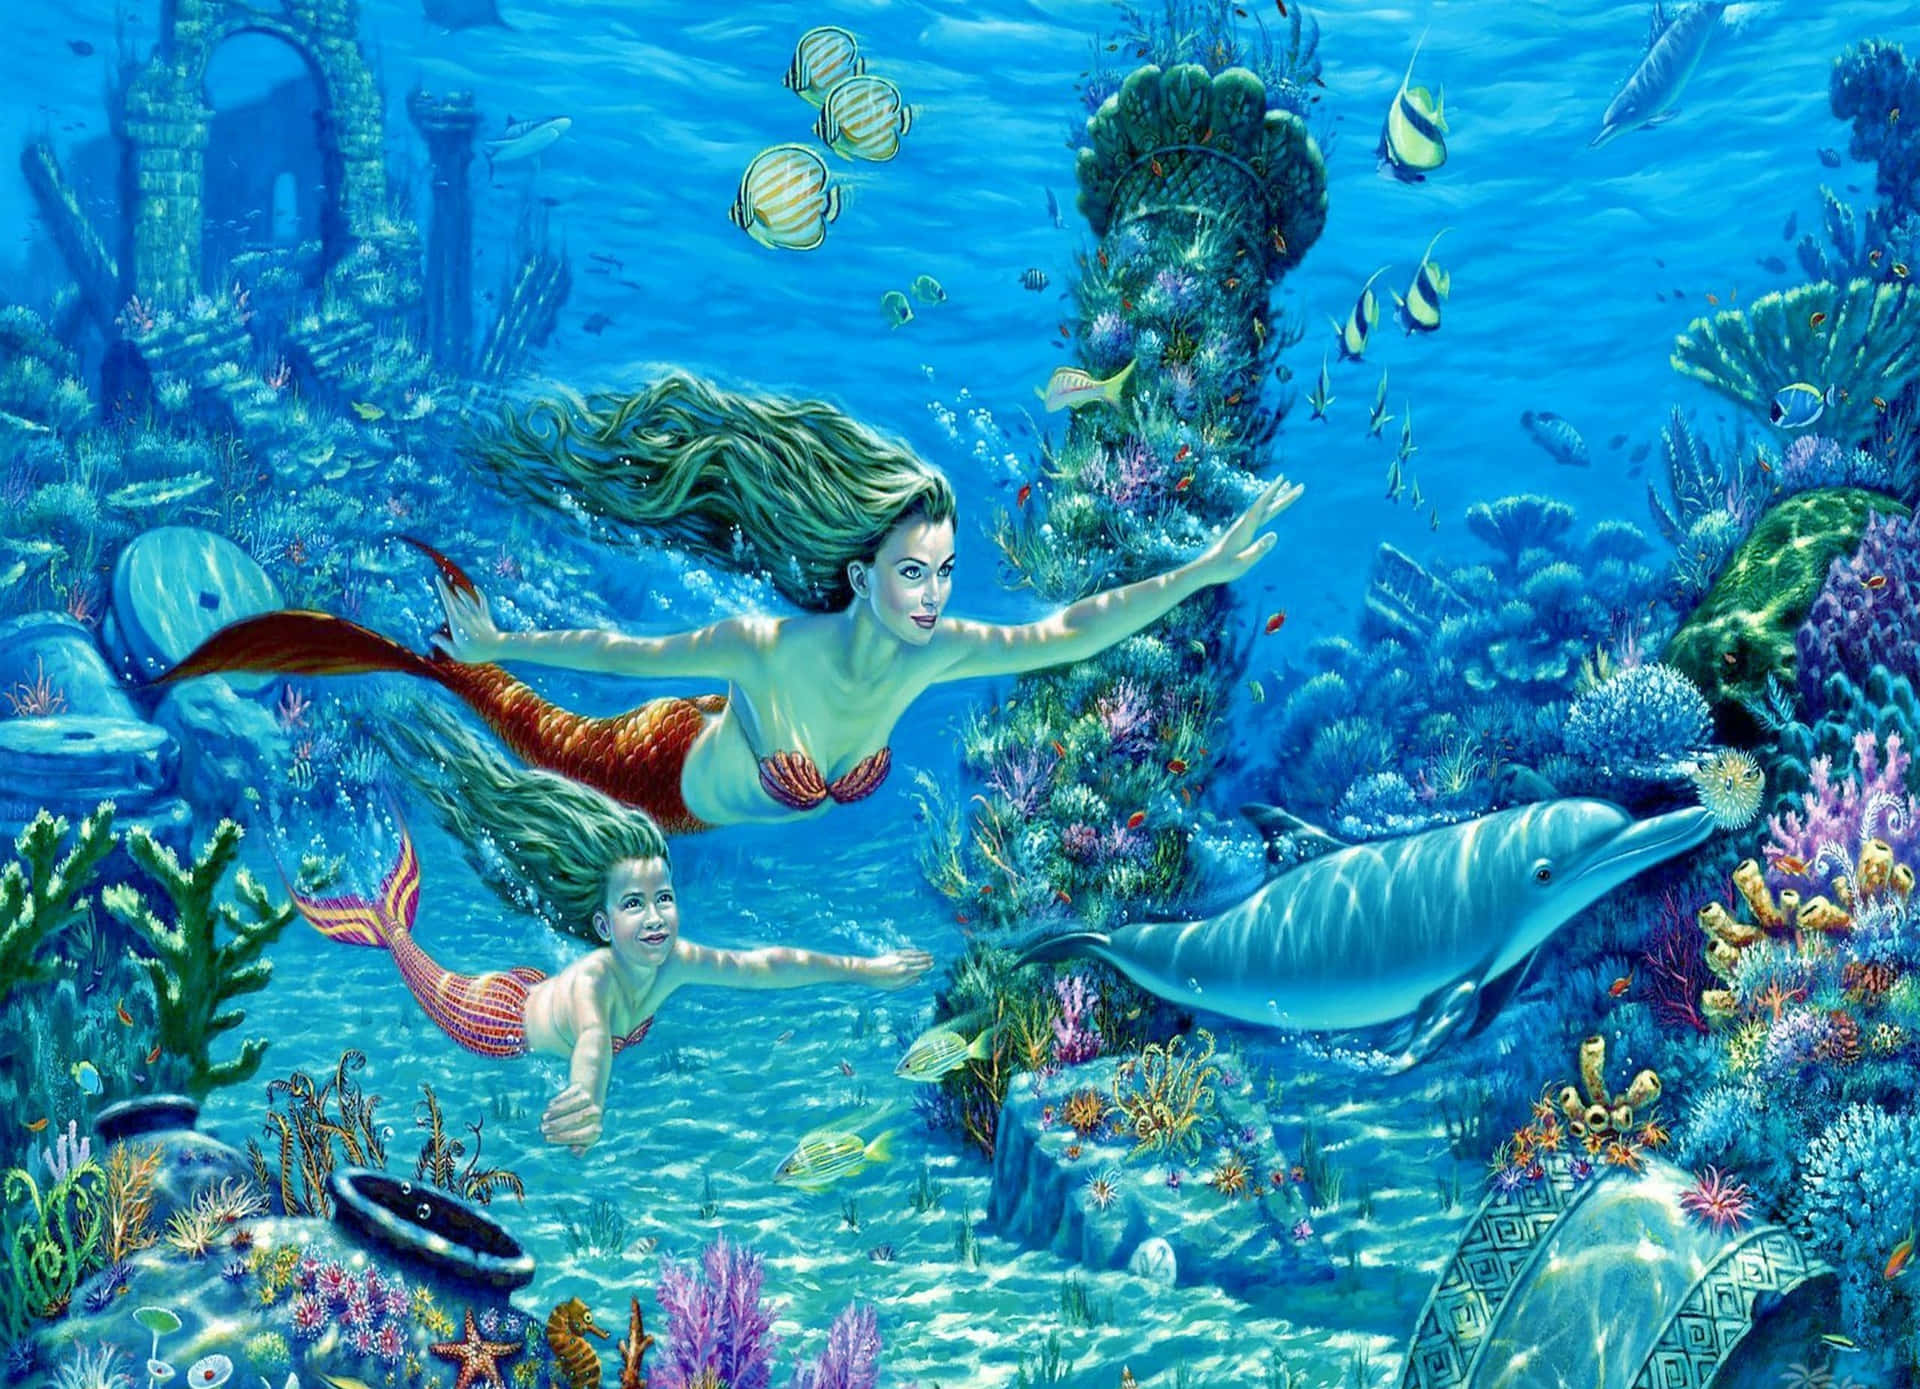 Aesthetic Ocean Mermaids Picture